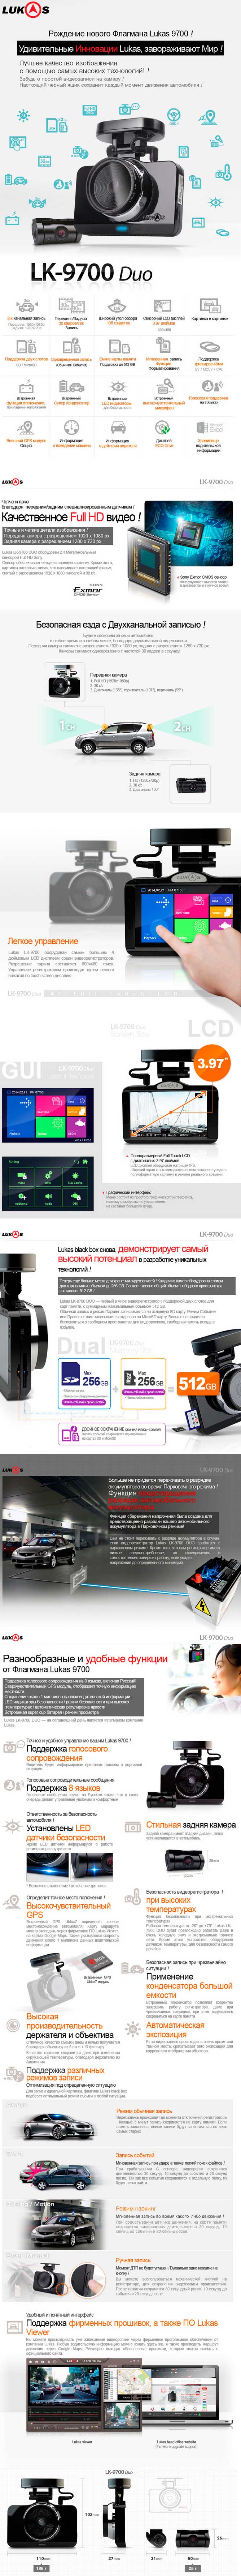 Lukas LK-9700 DUO презентация